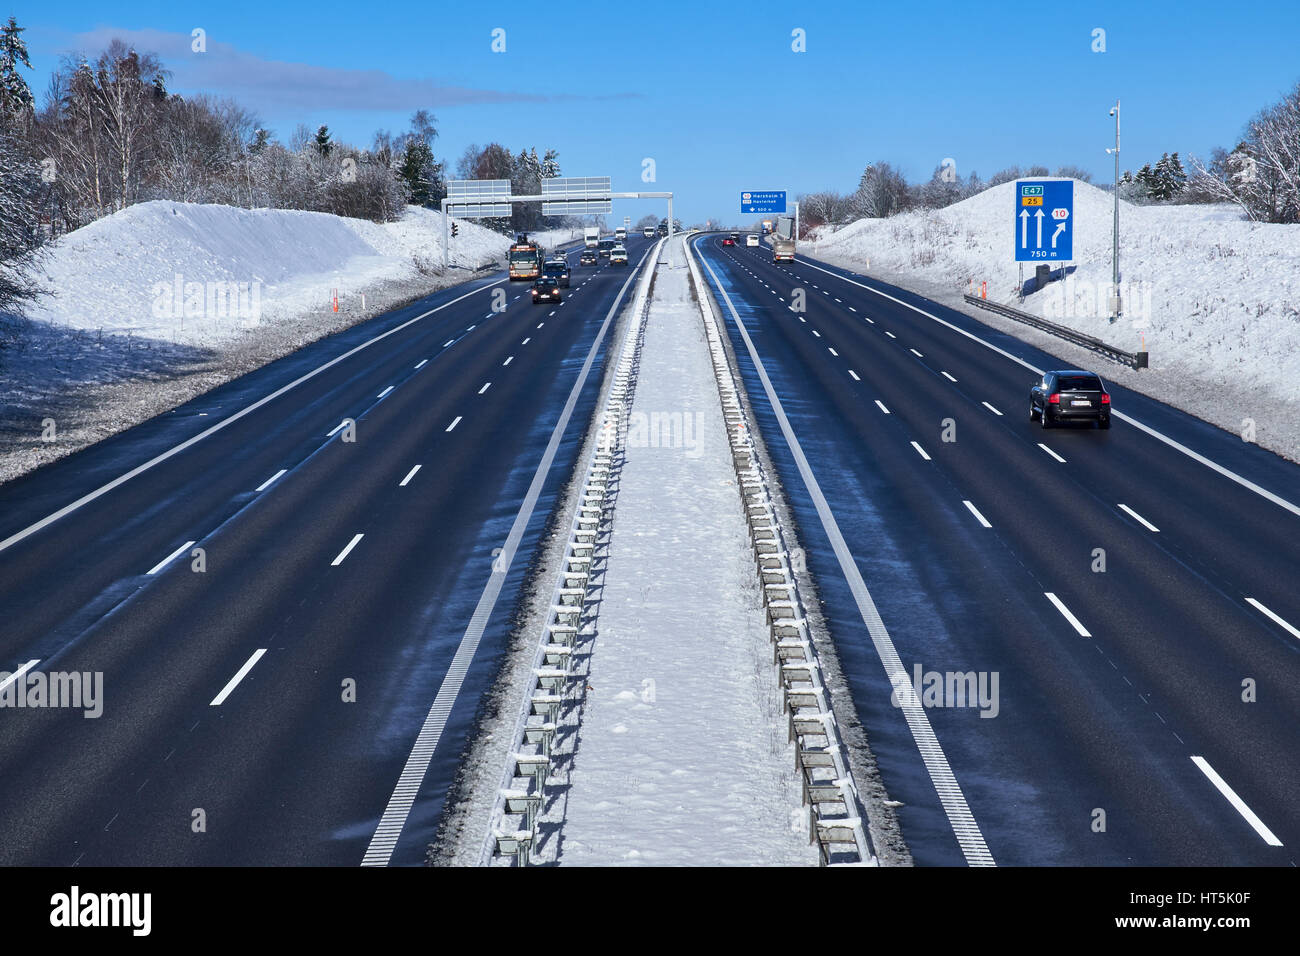 HOERSHOLM, Danimarca - 24 febbraio 2017: l'autostrada a sei corsie cancellato di neve in un paesaggio invernale Foto Stock